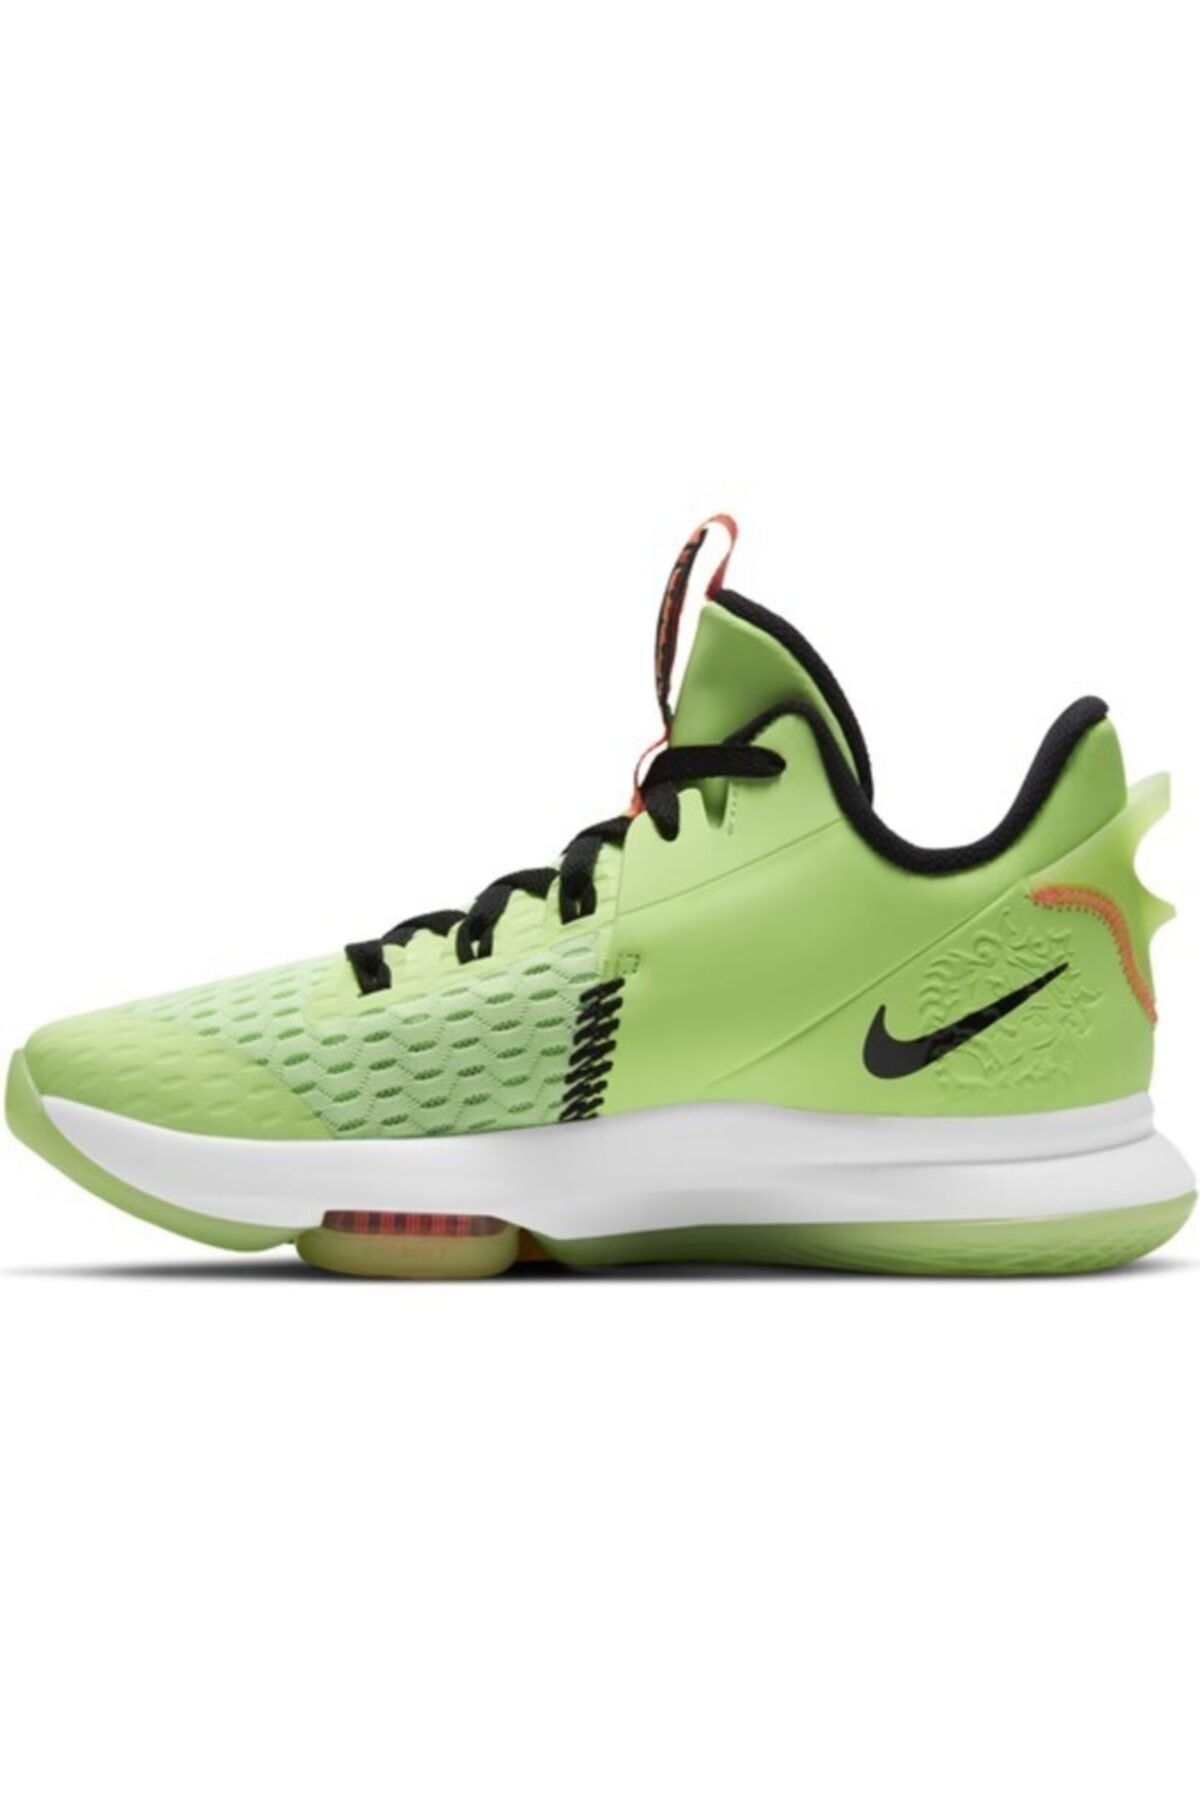 Nike Lebron Witness V Erkek Basketbol Ayakkabısı Yeşil Cq9380 300